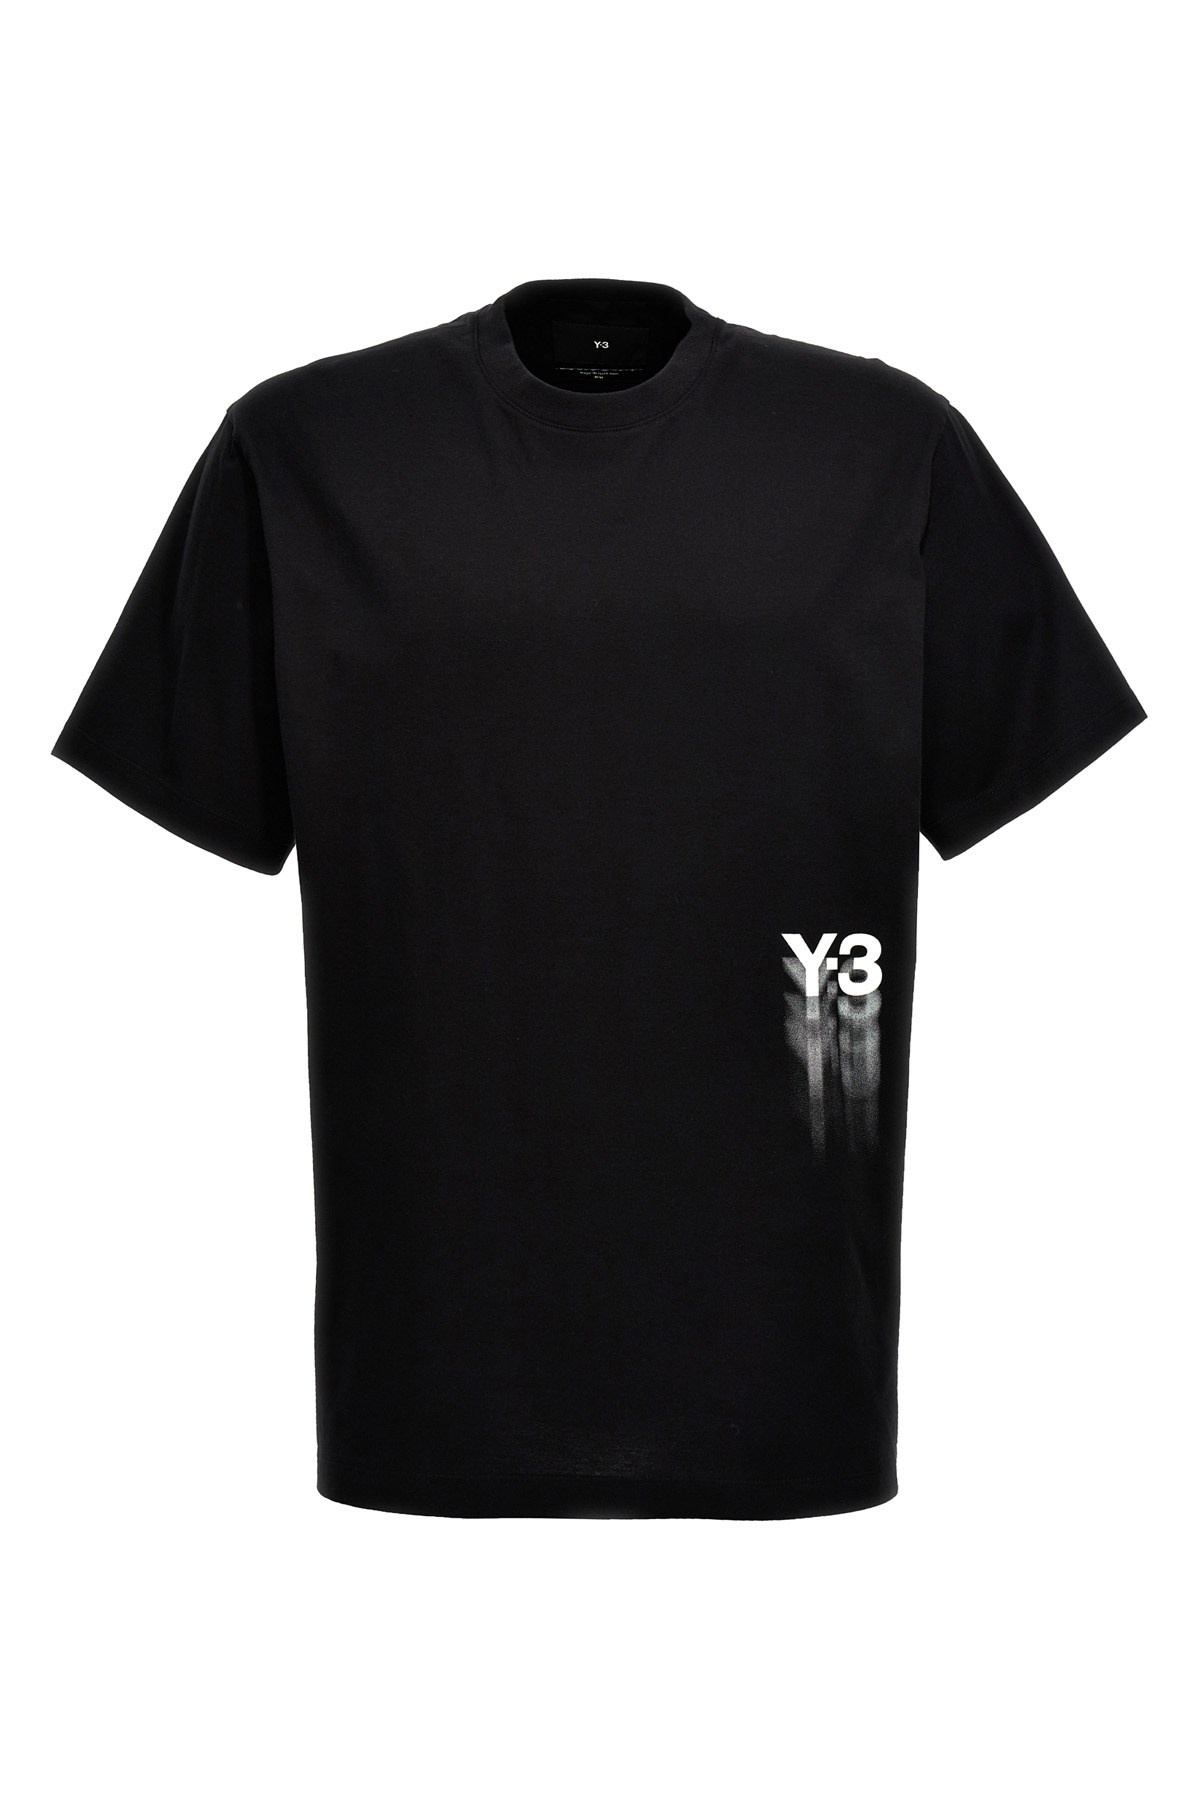 'Gfx' T-shirt - 1